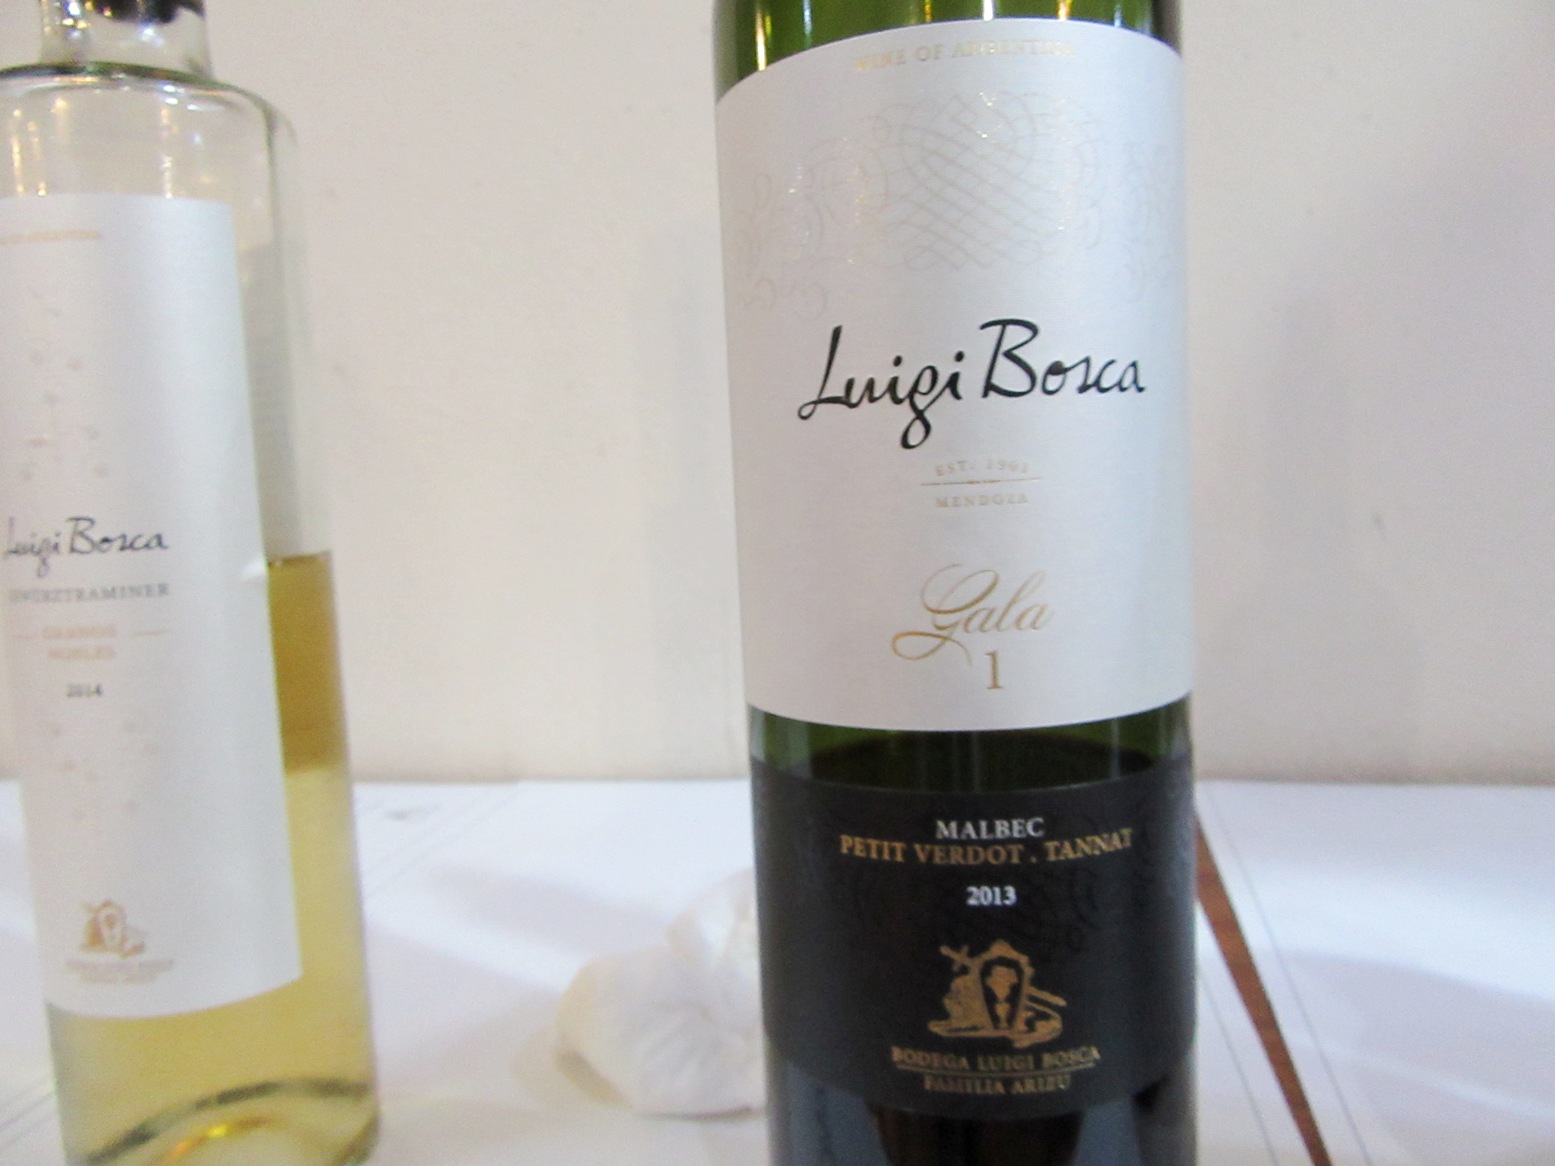 Luigi Bosca, Gala 1 Malbec Petit Verdot Tannat 2013, Luján de Cuyo, Mendoza, Wine Casual